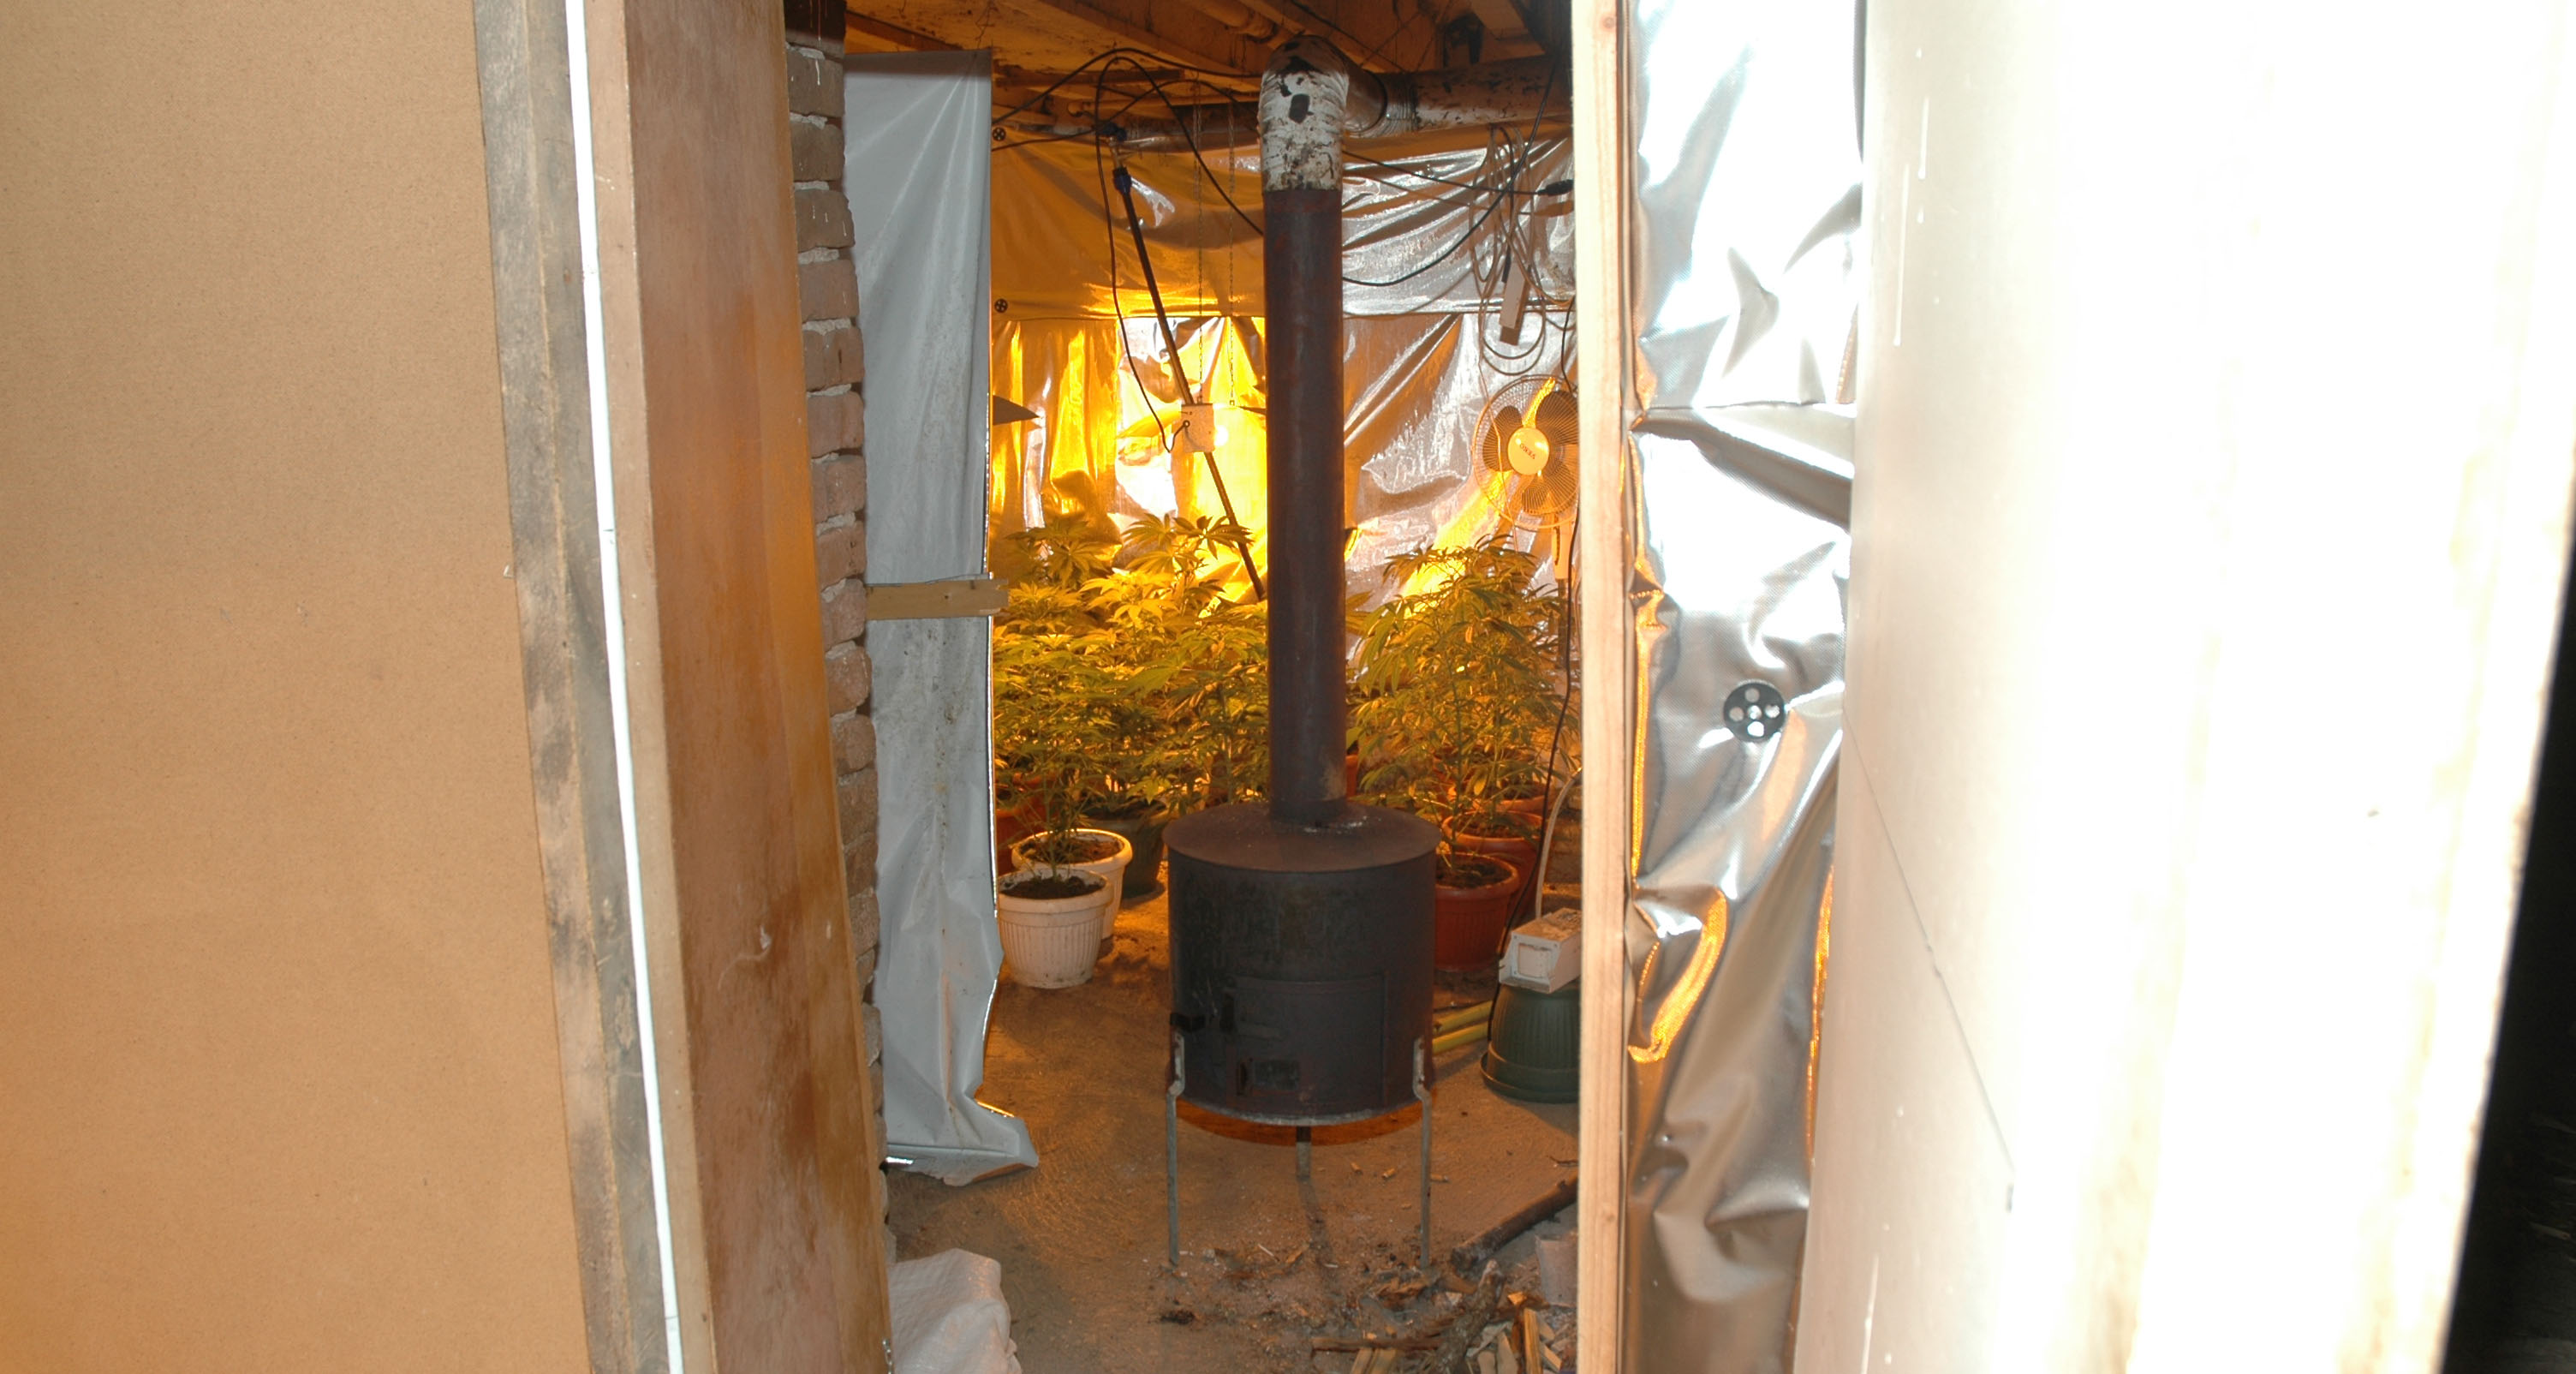 Otkrivena laboratorija za veštačku proizvodnju marihuane